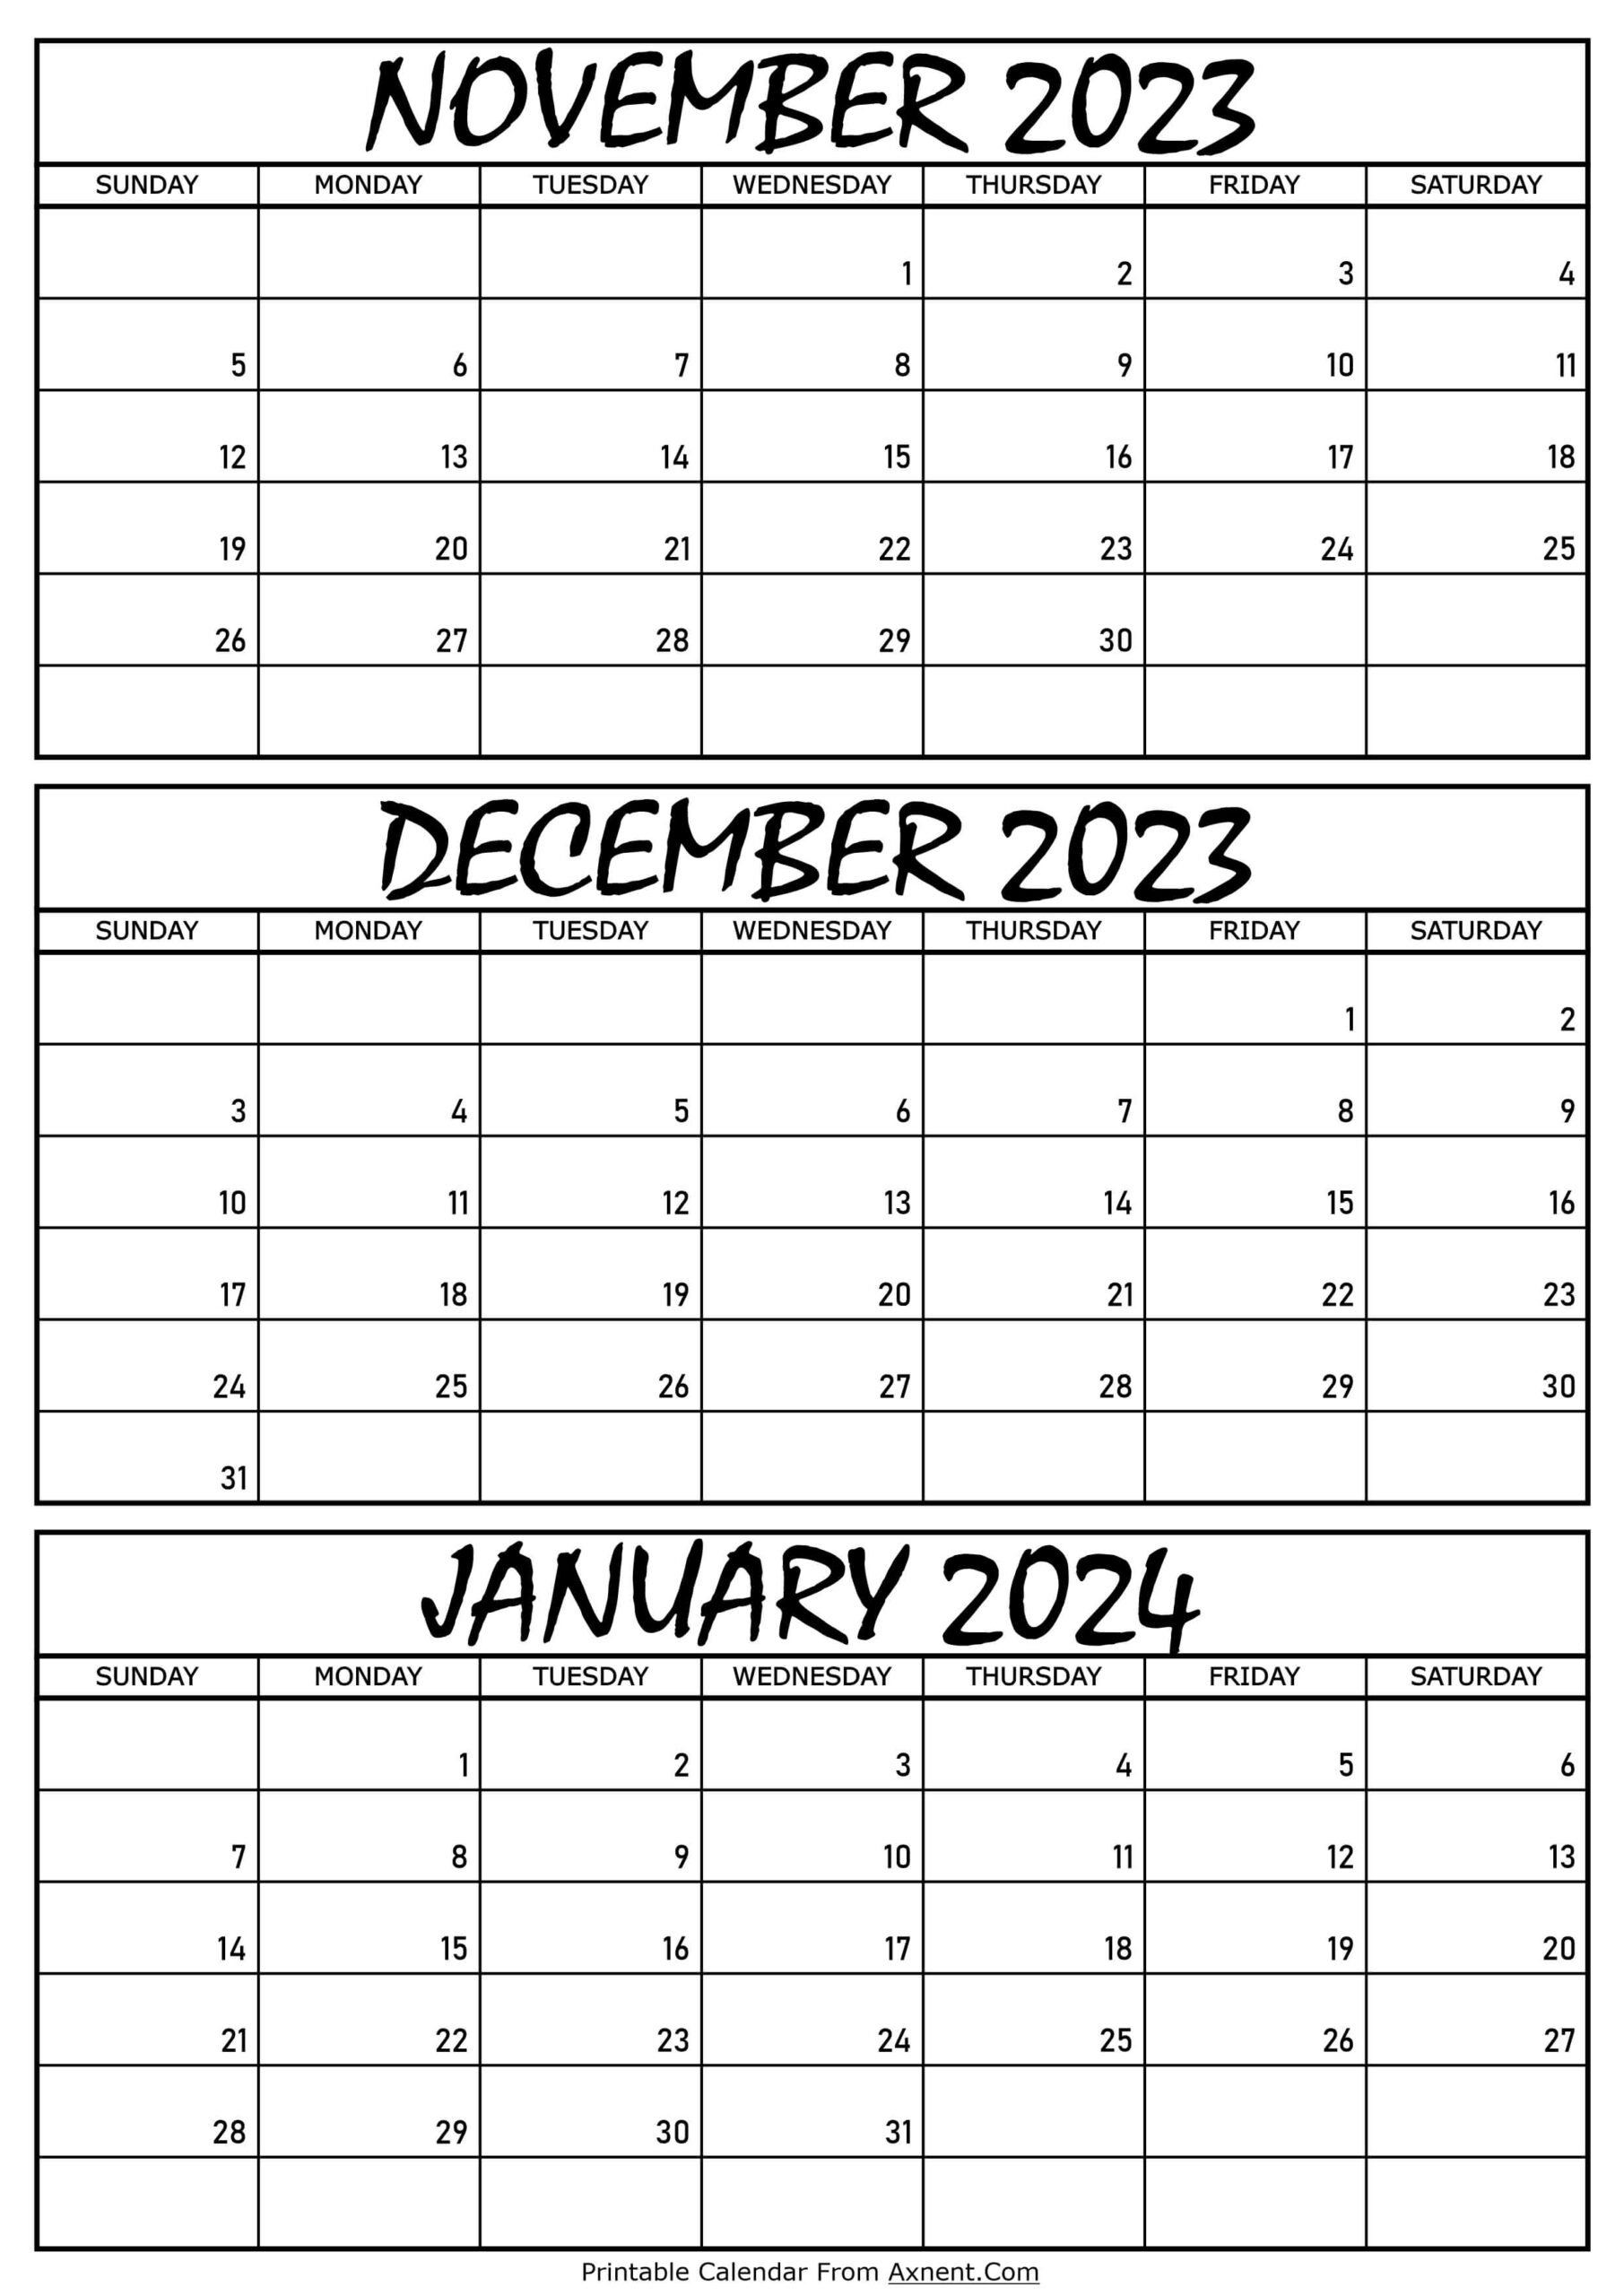 November 2023 To January 2024 Calendar Templates - Three Months for Printable Calendar November 2023 To January 2024